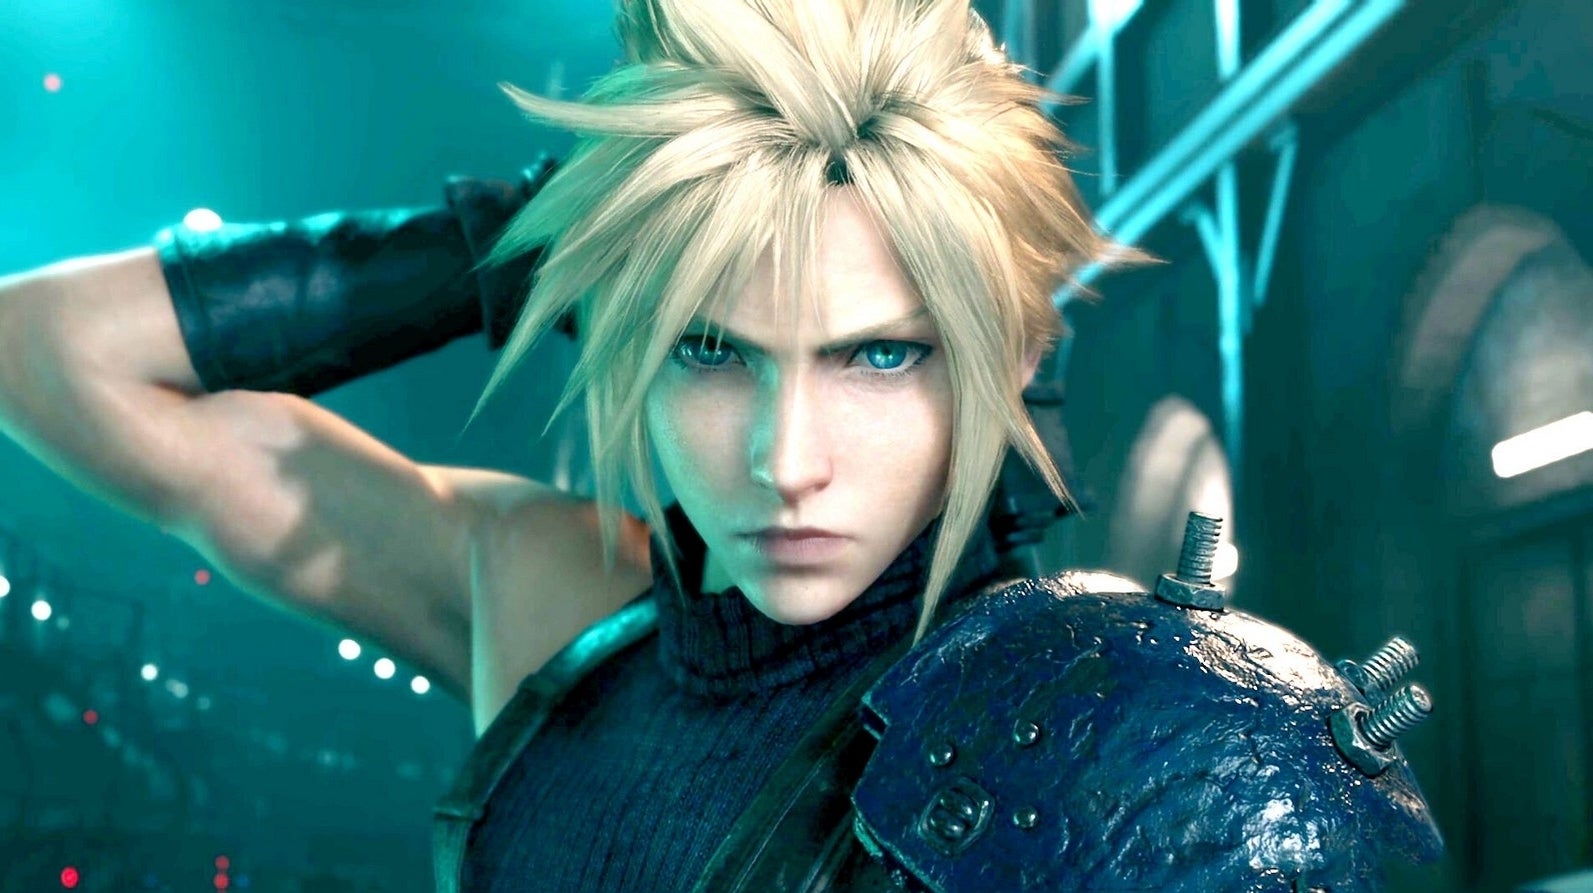 Bilder zu DF Retro widmet sich der epischen Final Fantasy VII Saga